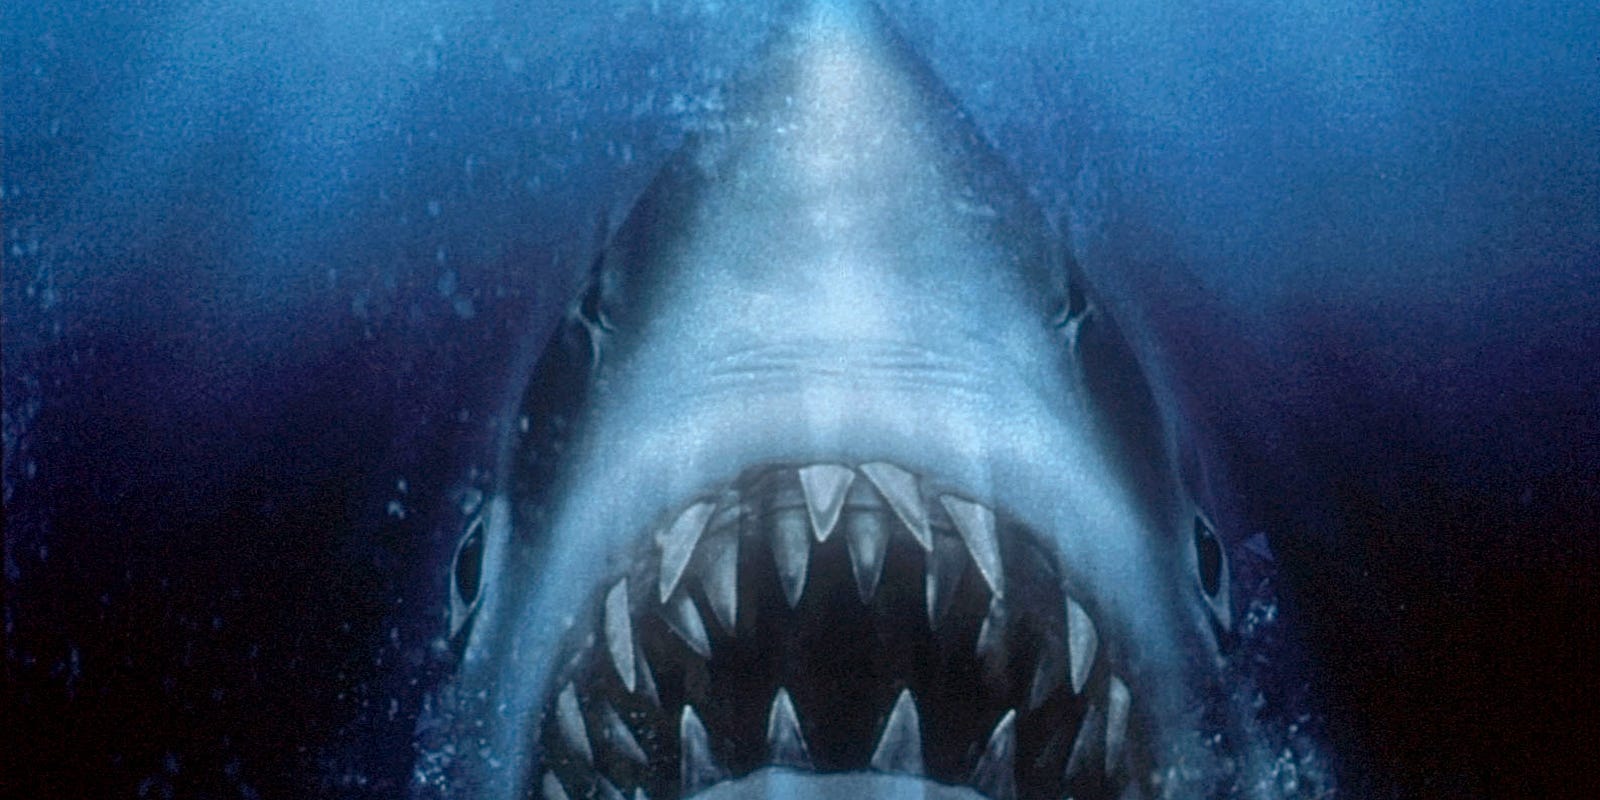 'Jaws' actress Lee Fierro, whose Mrs. Kintner slaps Chief Brody, dies